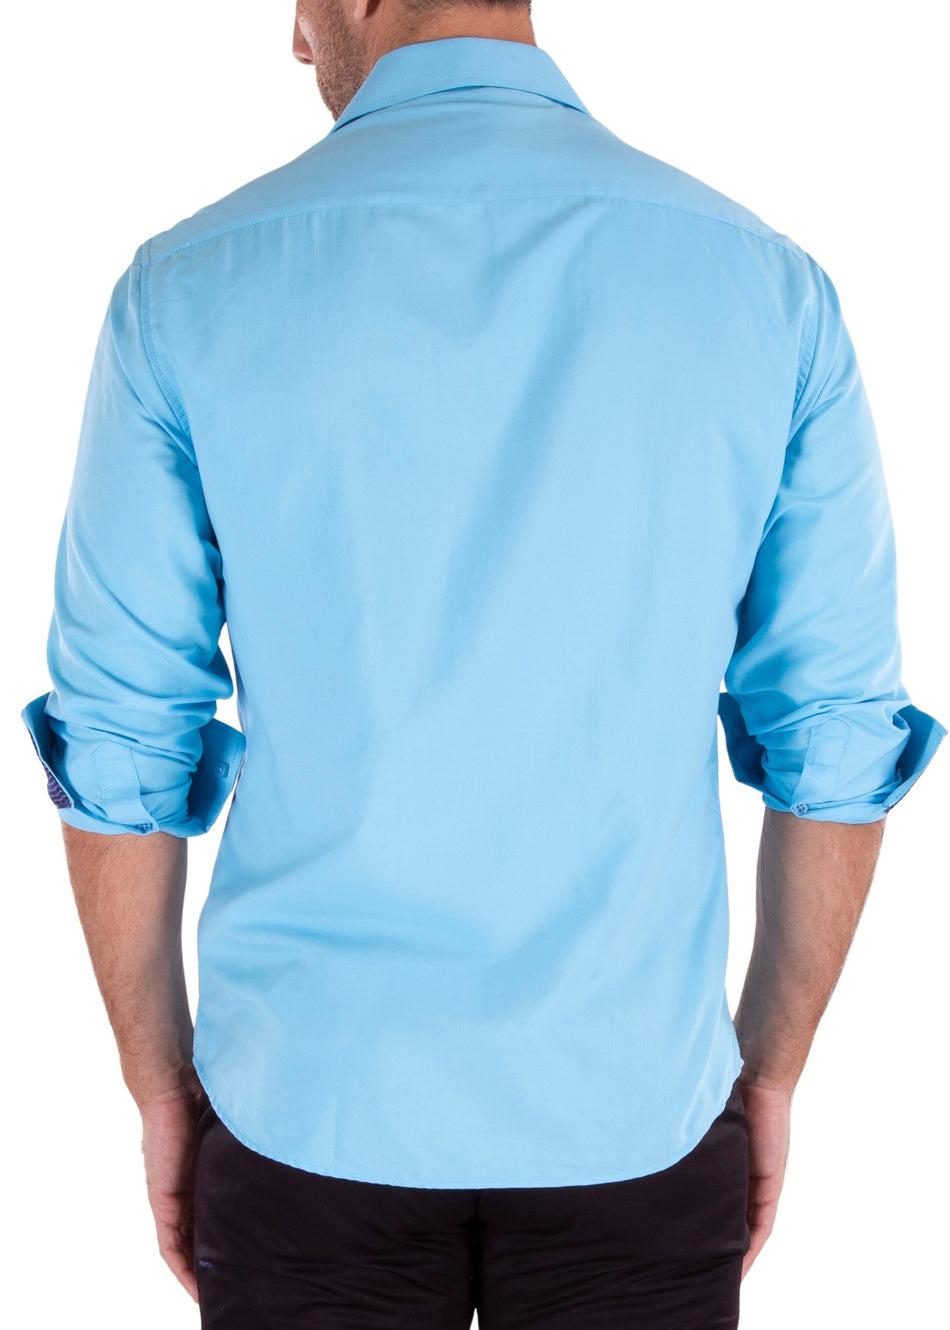 222309 - Turquoise Long Sleeve Shirt